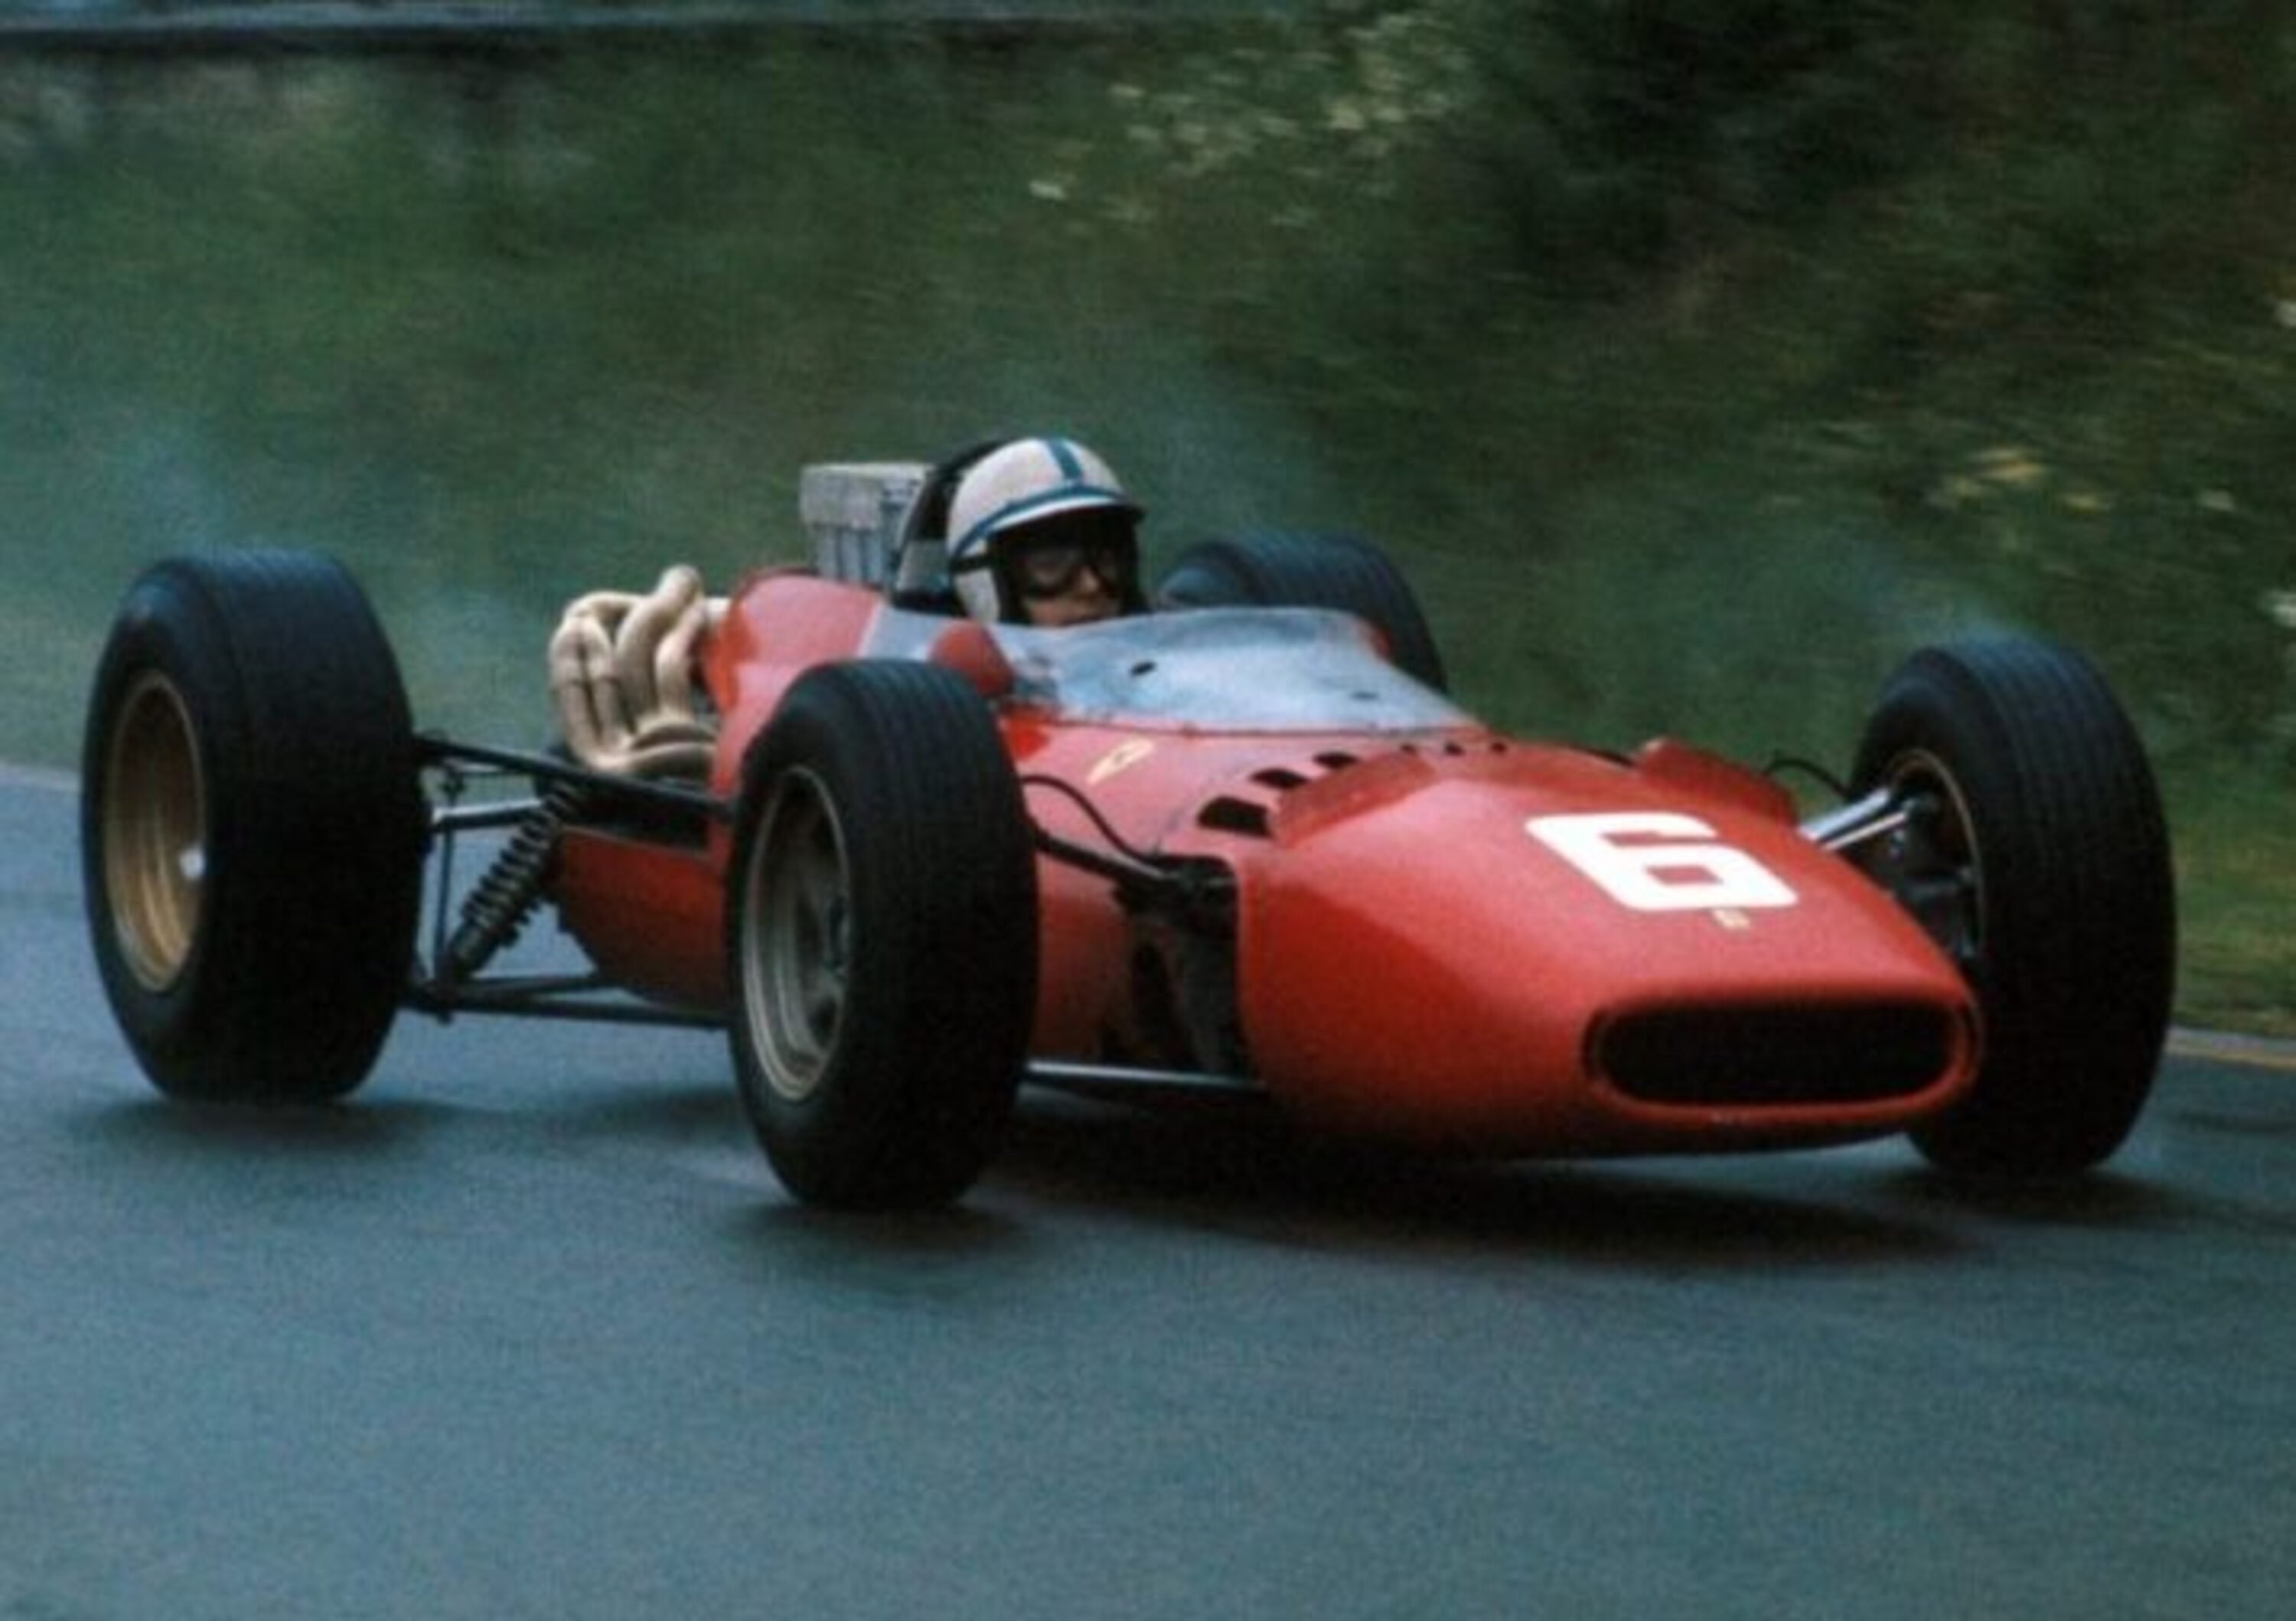 Morto John Surtees, campione del mondo in F1 con Ferrari e nel motomondiale